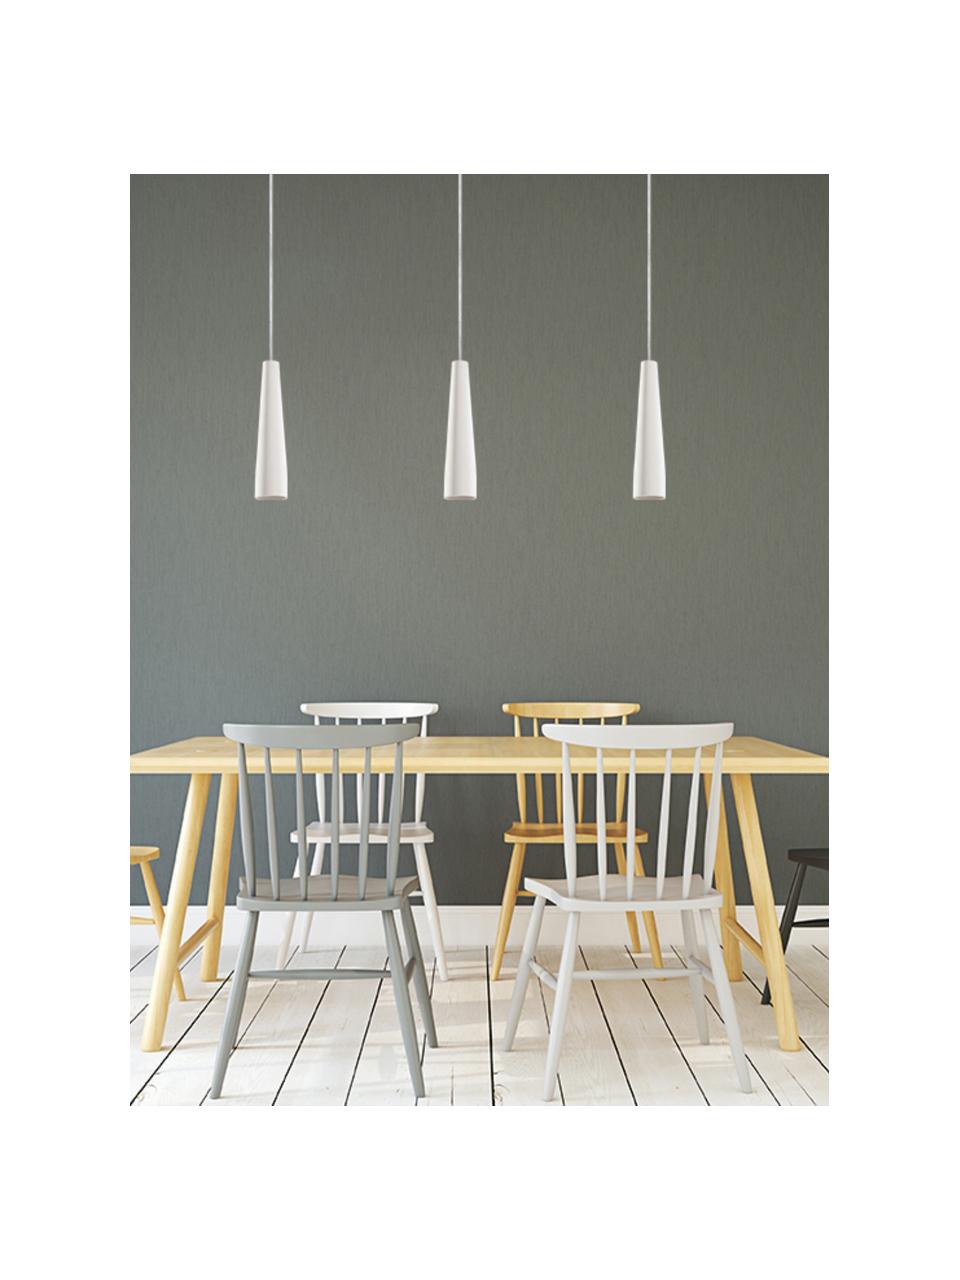 Kleine keramische hanglamp Alverna, Lampenkap: keramiek, Wit, gebroken wit, Ø 8 x H 32 cm